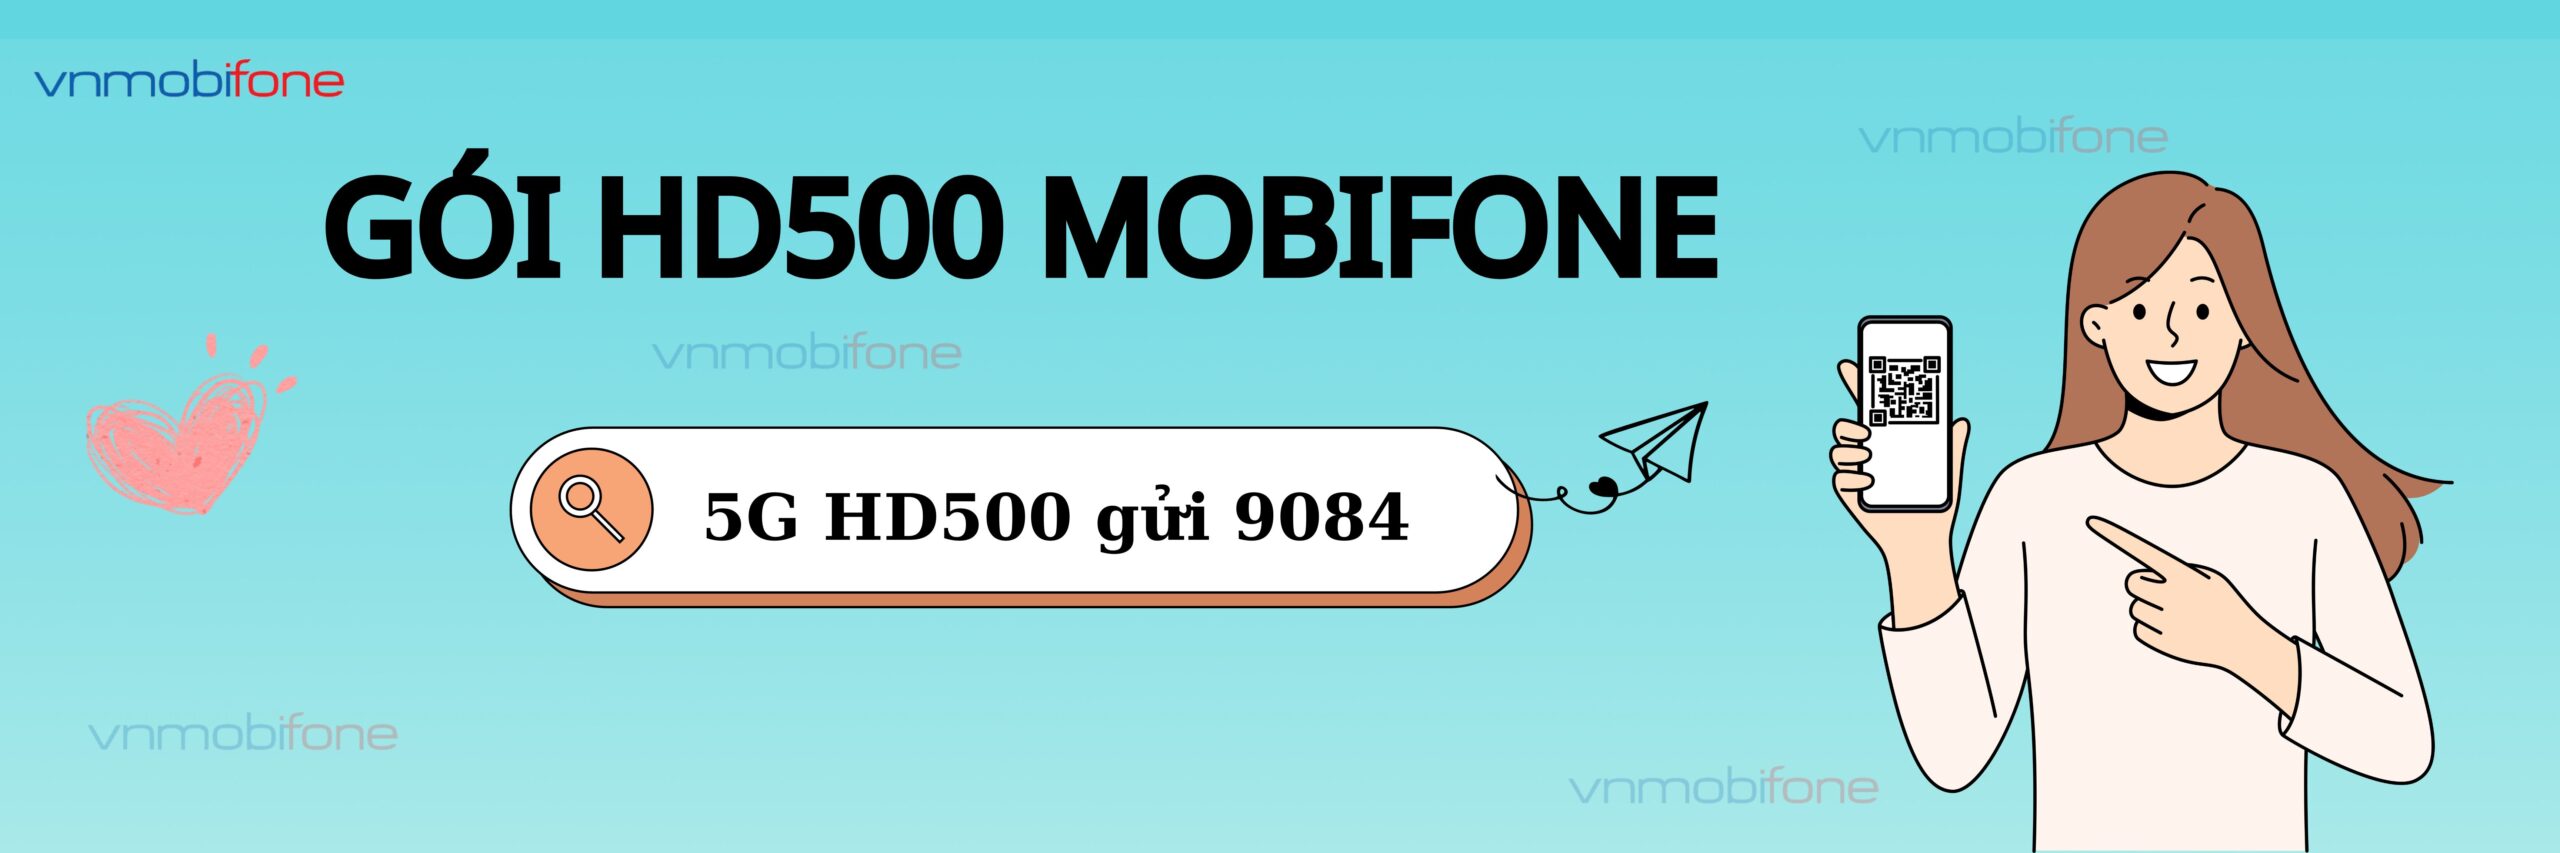 đăng ký gói hd500 mobifone